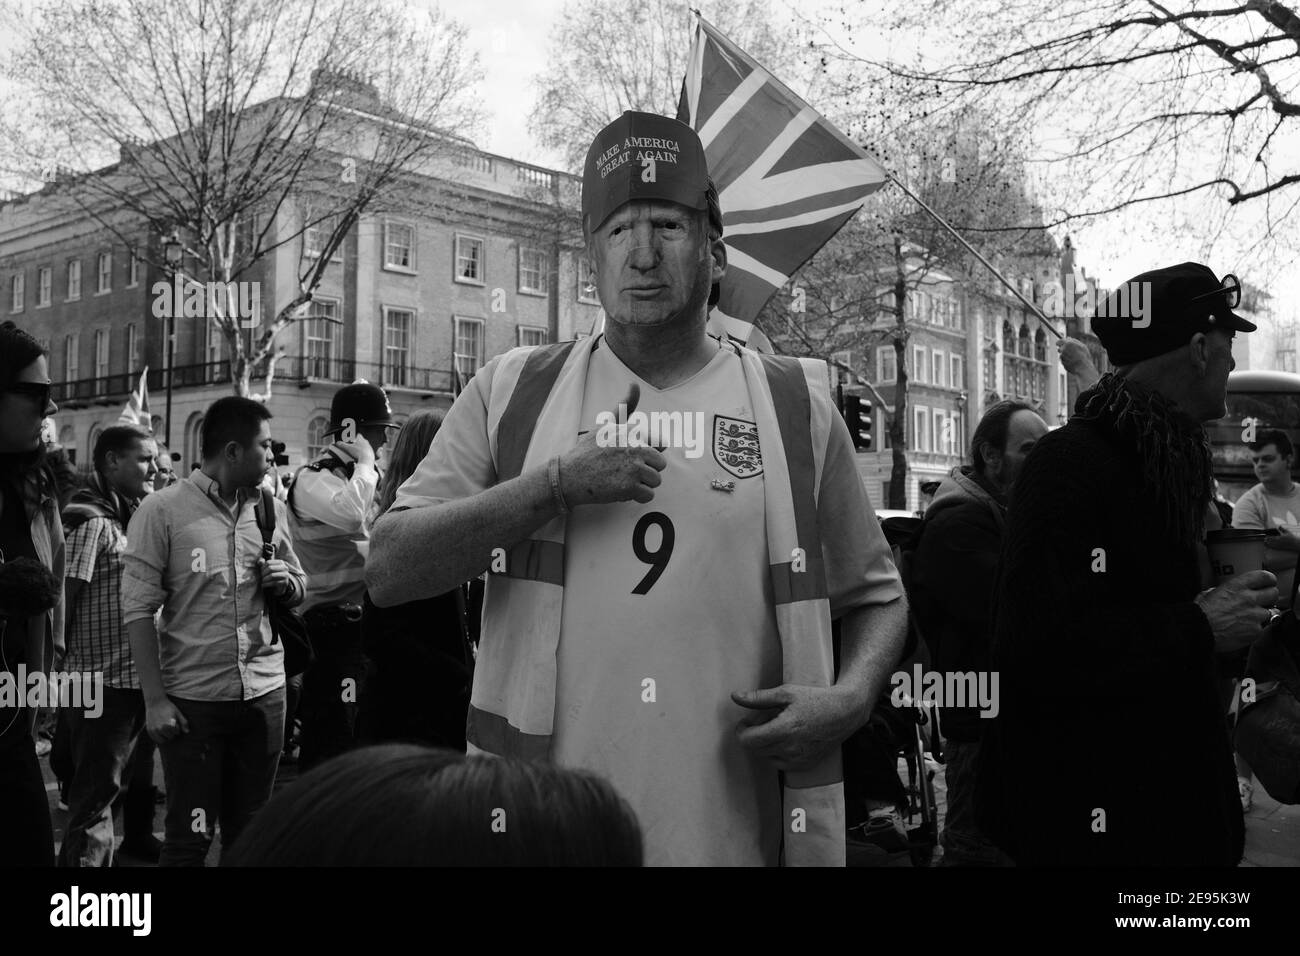 LONDRA - MARZO 2019: Un sostenitore della brexit fuori Downing Street con una maschera di cartone Donald Trump. Foto Stock